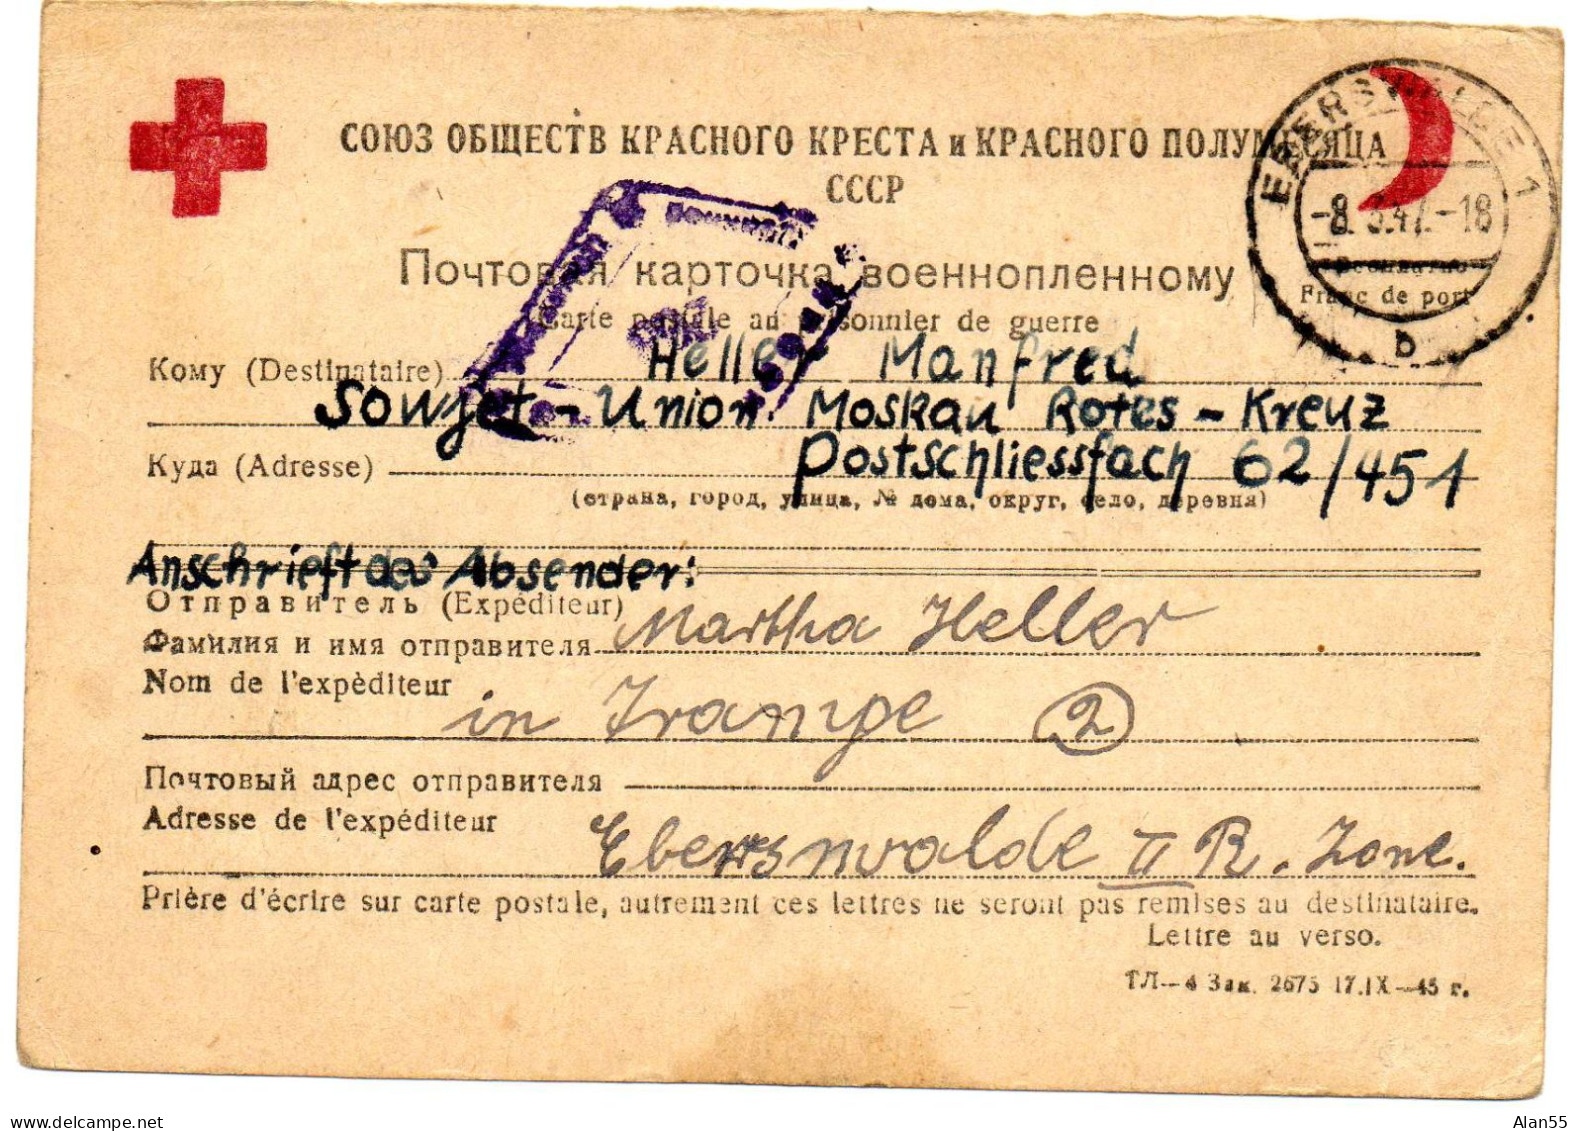 URSS. 1947. CARTE FAMILIALE CROIX-ROUGE. (SENS ALLEMAGNE-URSS). CENSURE - Brieven En Documenten